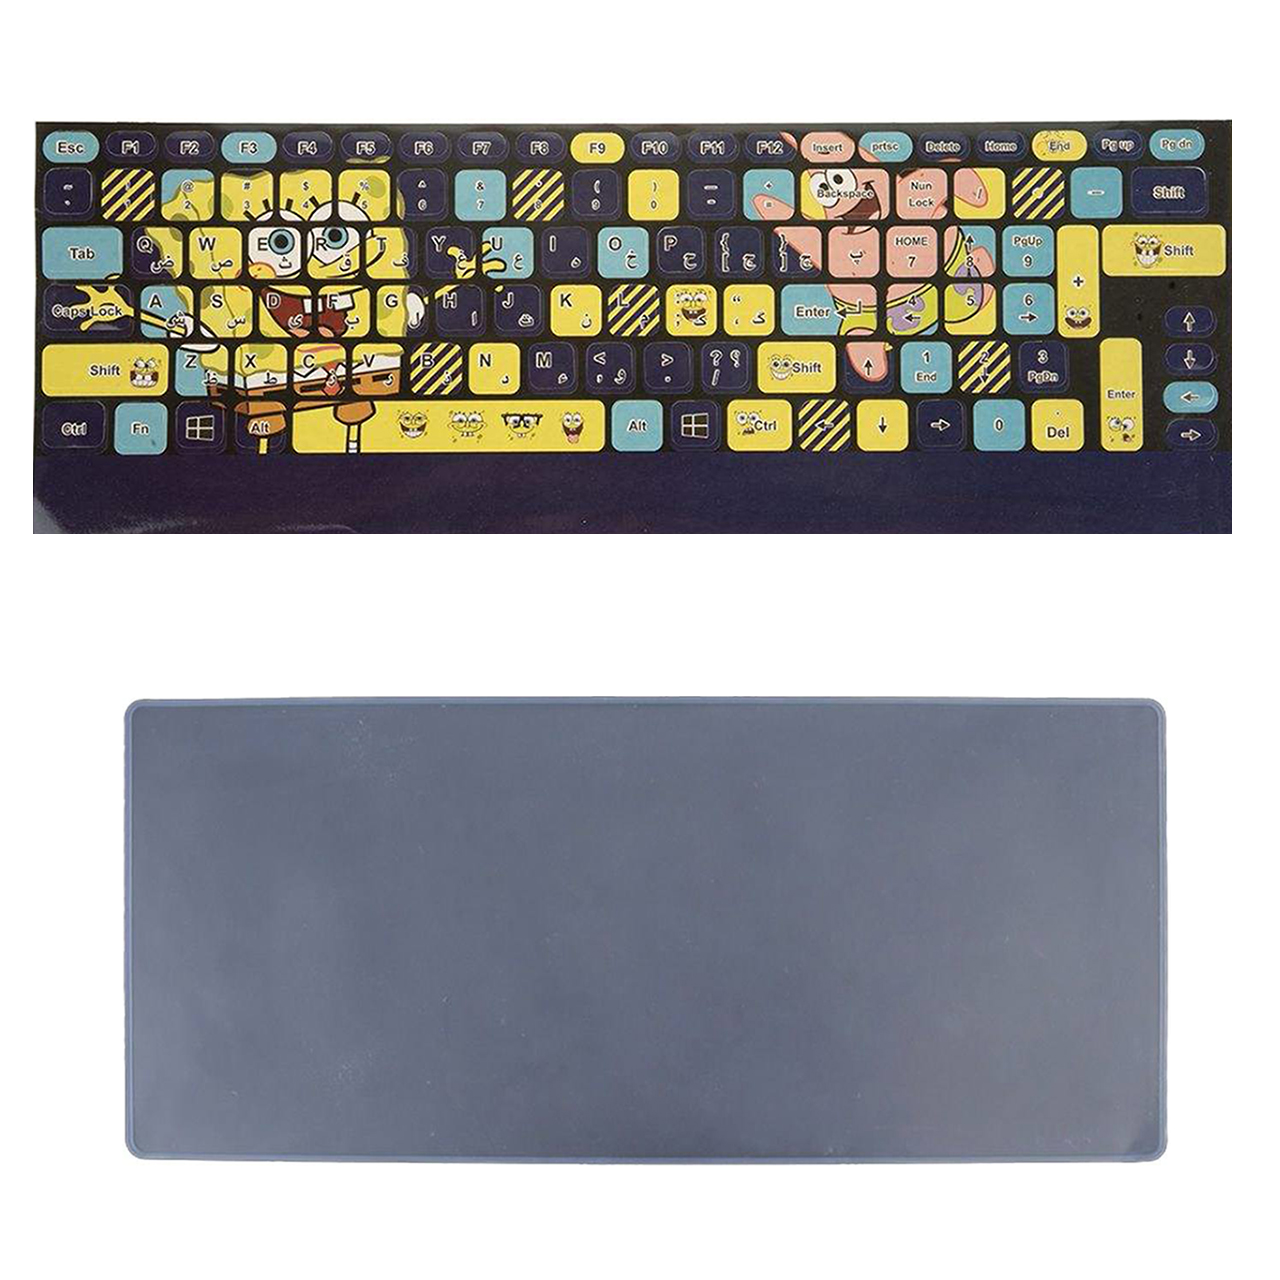 برچسب حروف فارسی کیبورد طرح باب اسفنجی به همراه محافظ کیبورد مدل 15-I مناسب برای لپ تاپ 15.6 اینچ